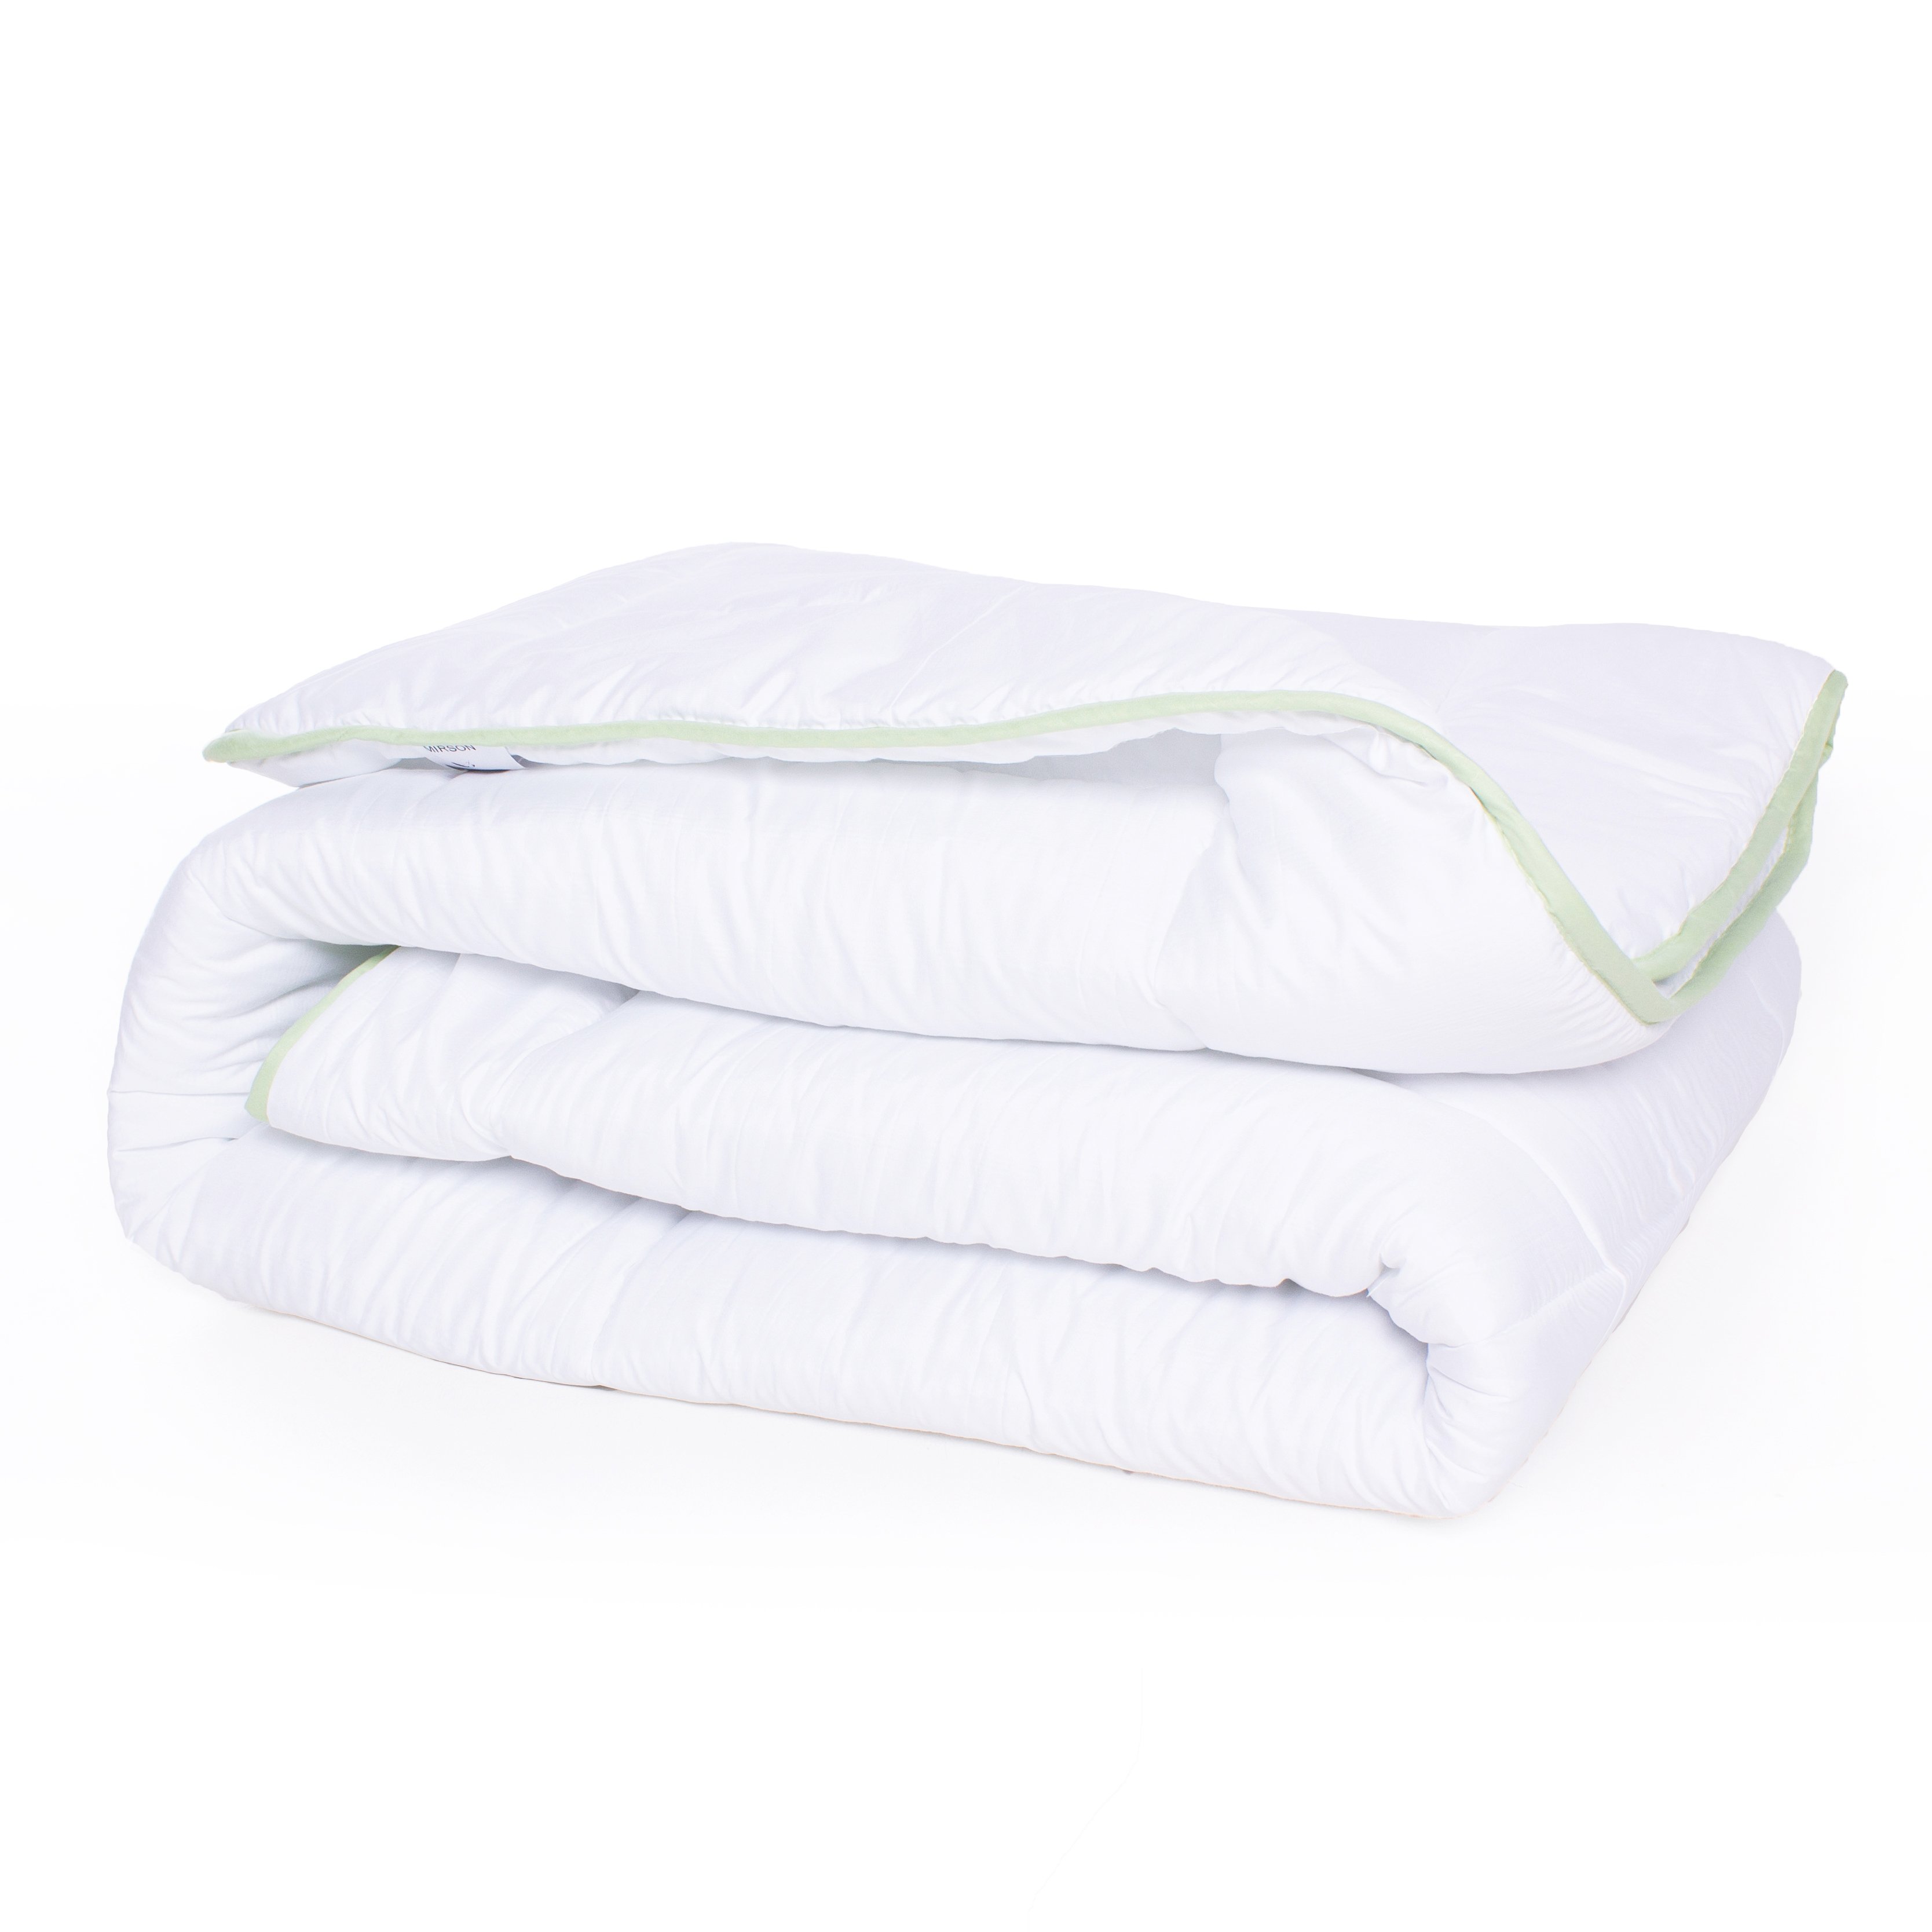 Одеяло антиаллергенное MirSon EcoSilk №003, зимнее, 200x220 см, белое (8062582) - фото 2